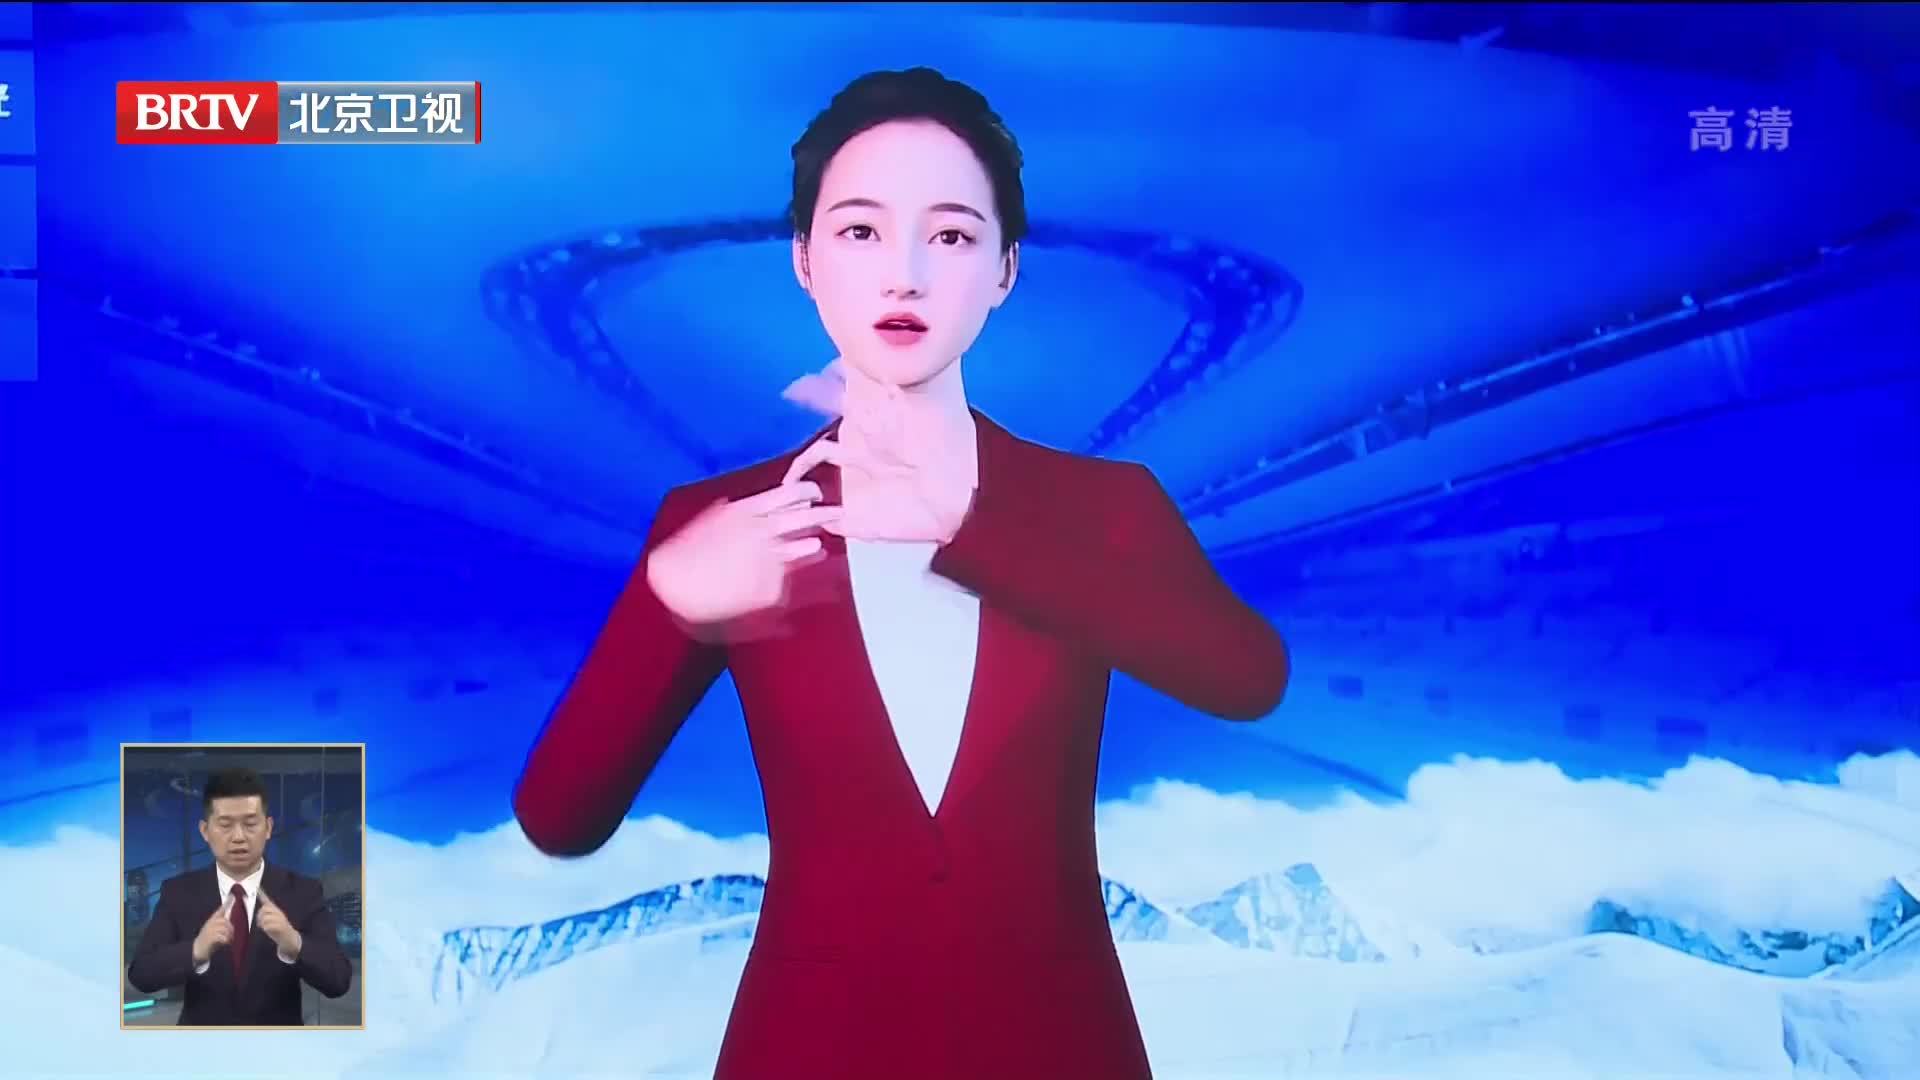 冬奥手语播报数字人系统将在北京广播电视台新闻节目中投入使用 凤凰网视频 凤凰网